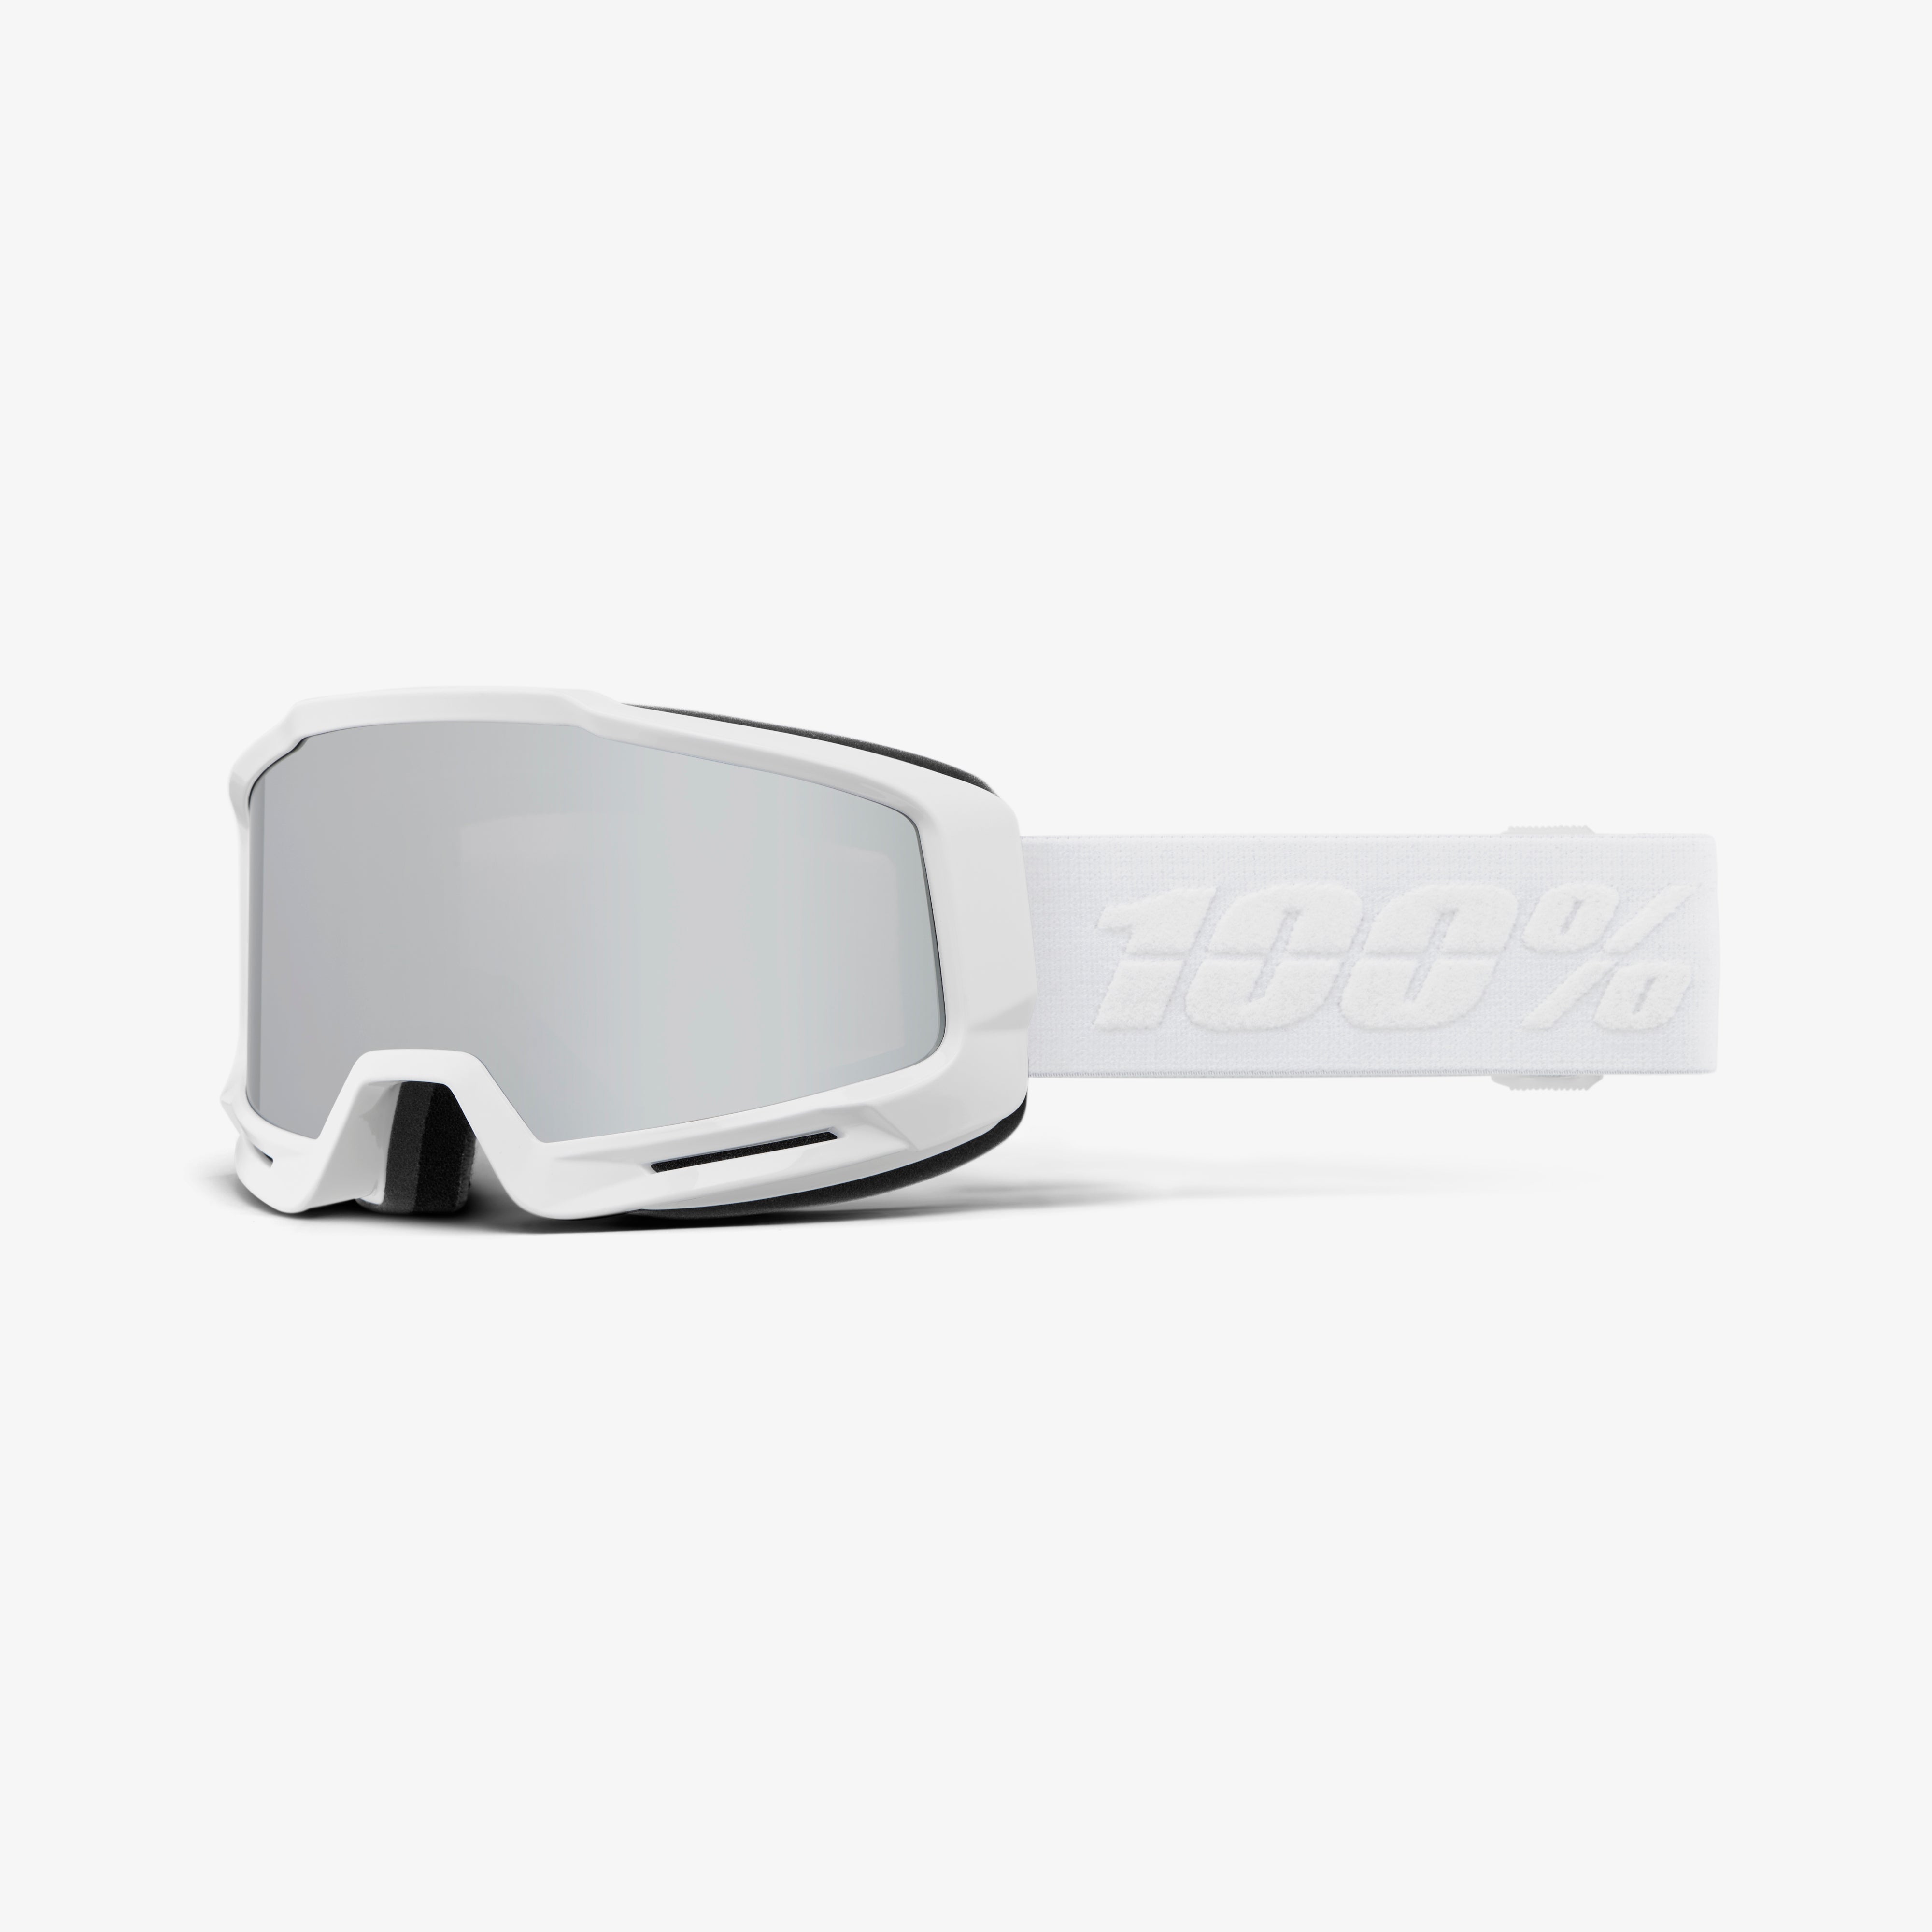 OKAN HiPER Goggle White/Silver